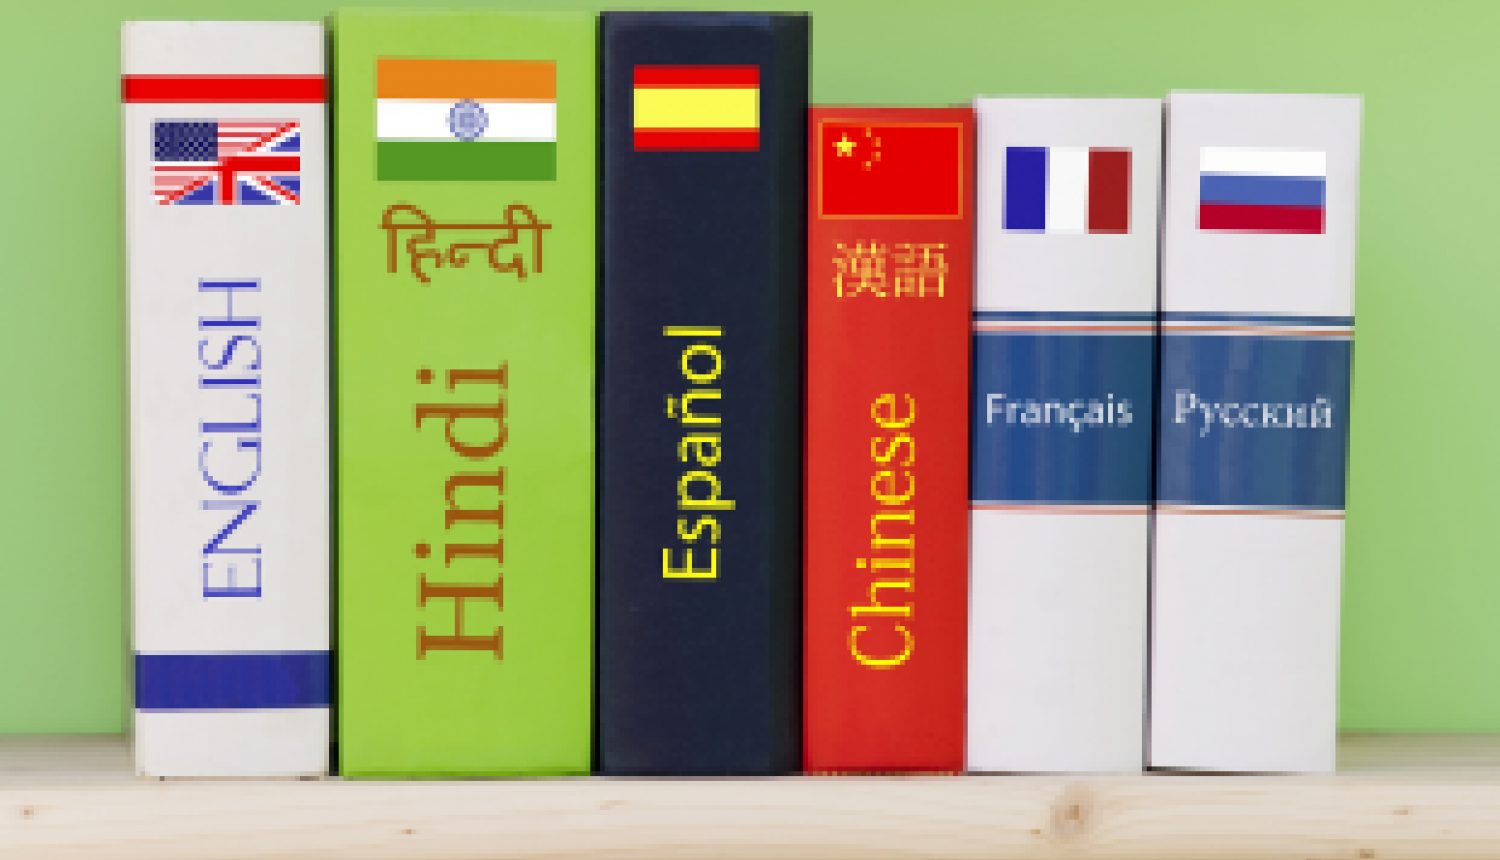 Publicēts Eurydice īss apskats ar galvenajiem datiem par valodu mācīšanu Eiropas skolās